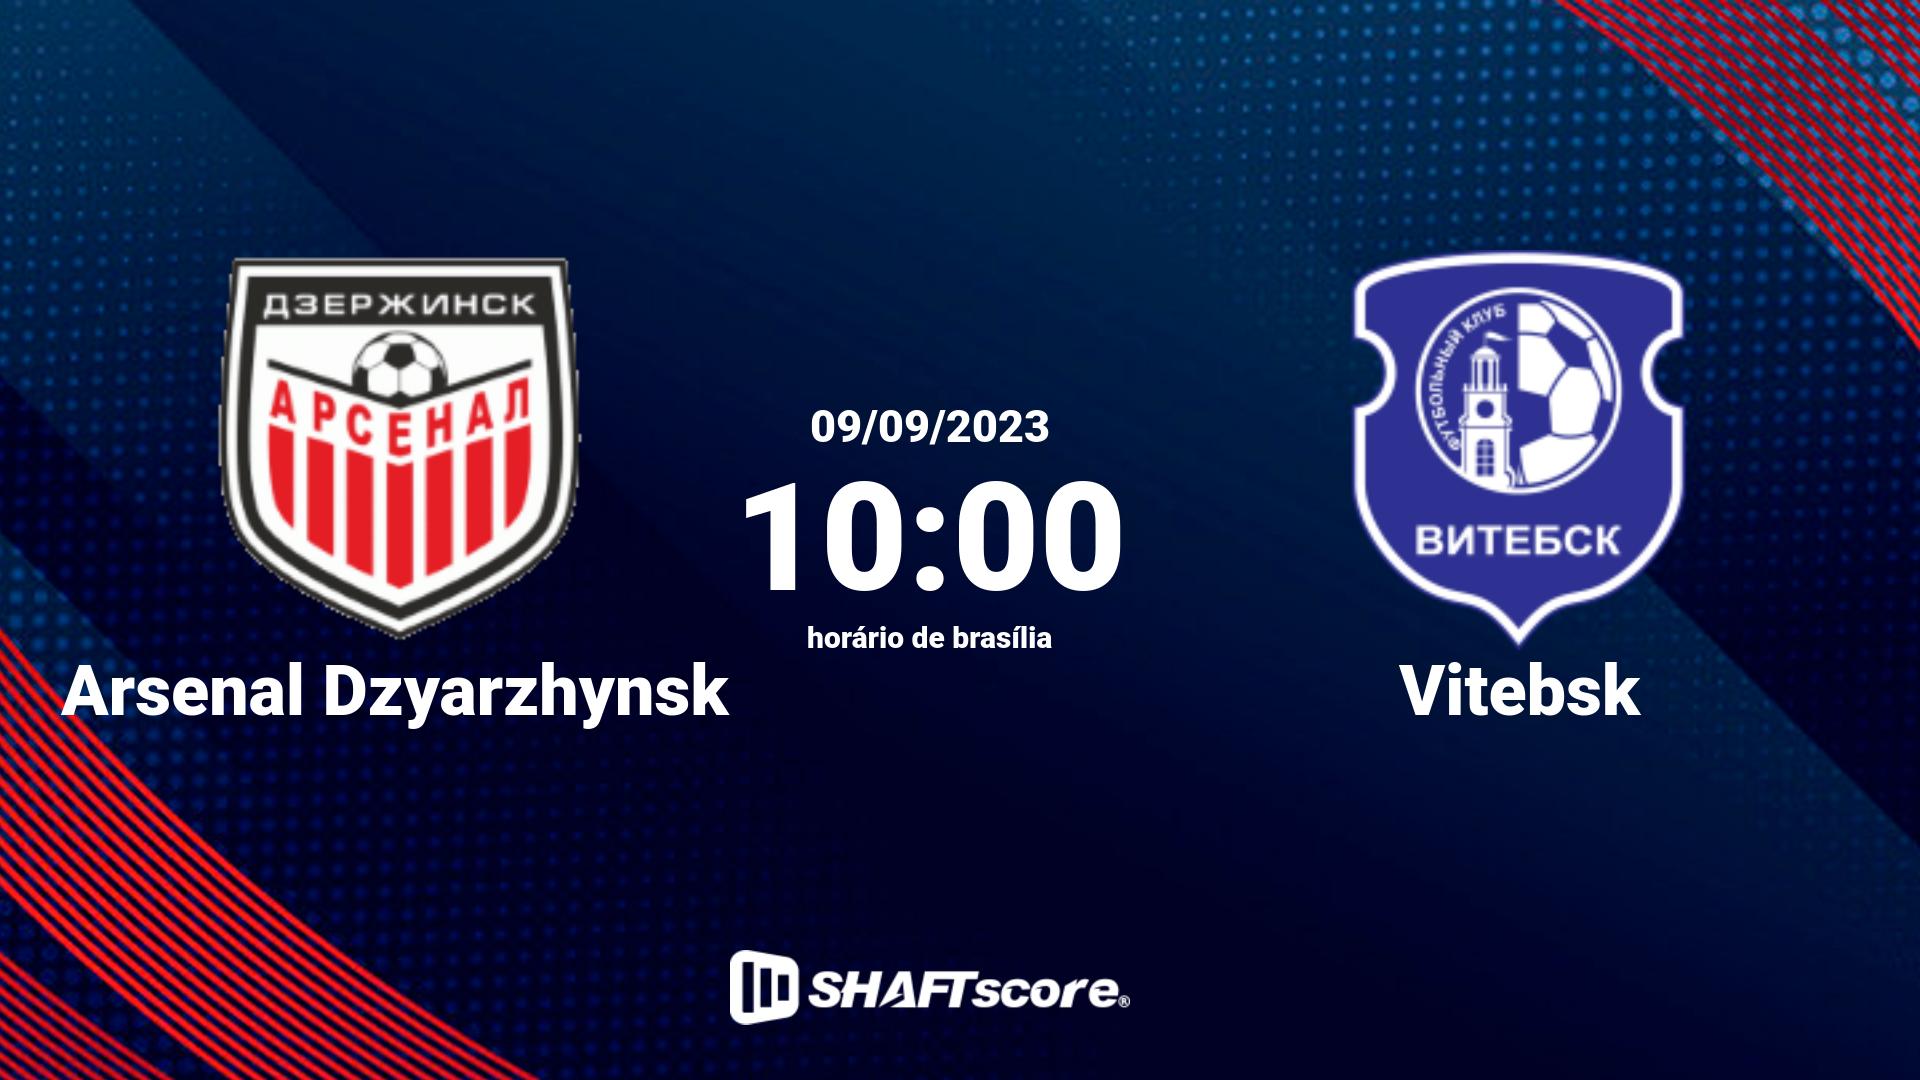 Estatísticas do jogo Arsenal Dzyarzhynsk vs Vitebsk 09.09 10:00